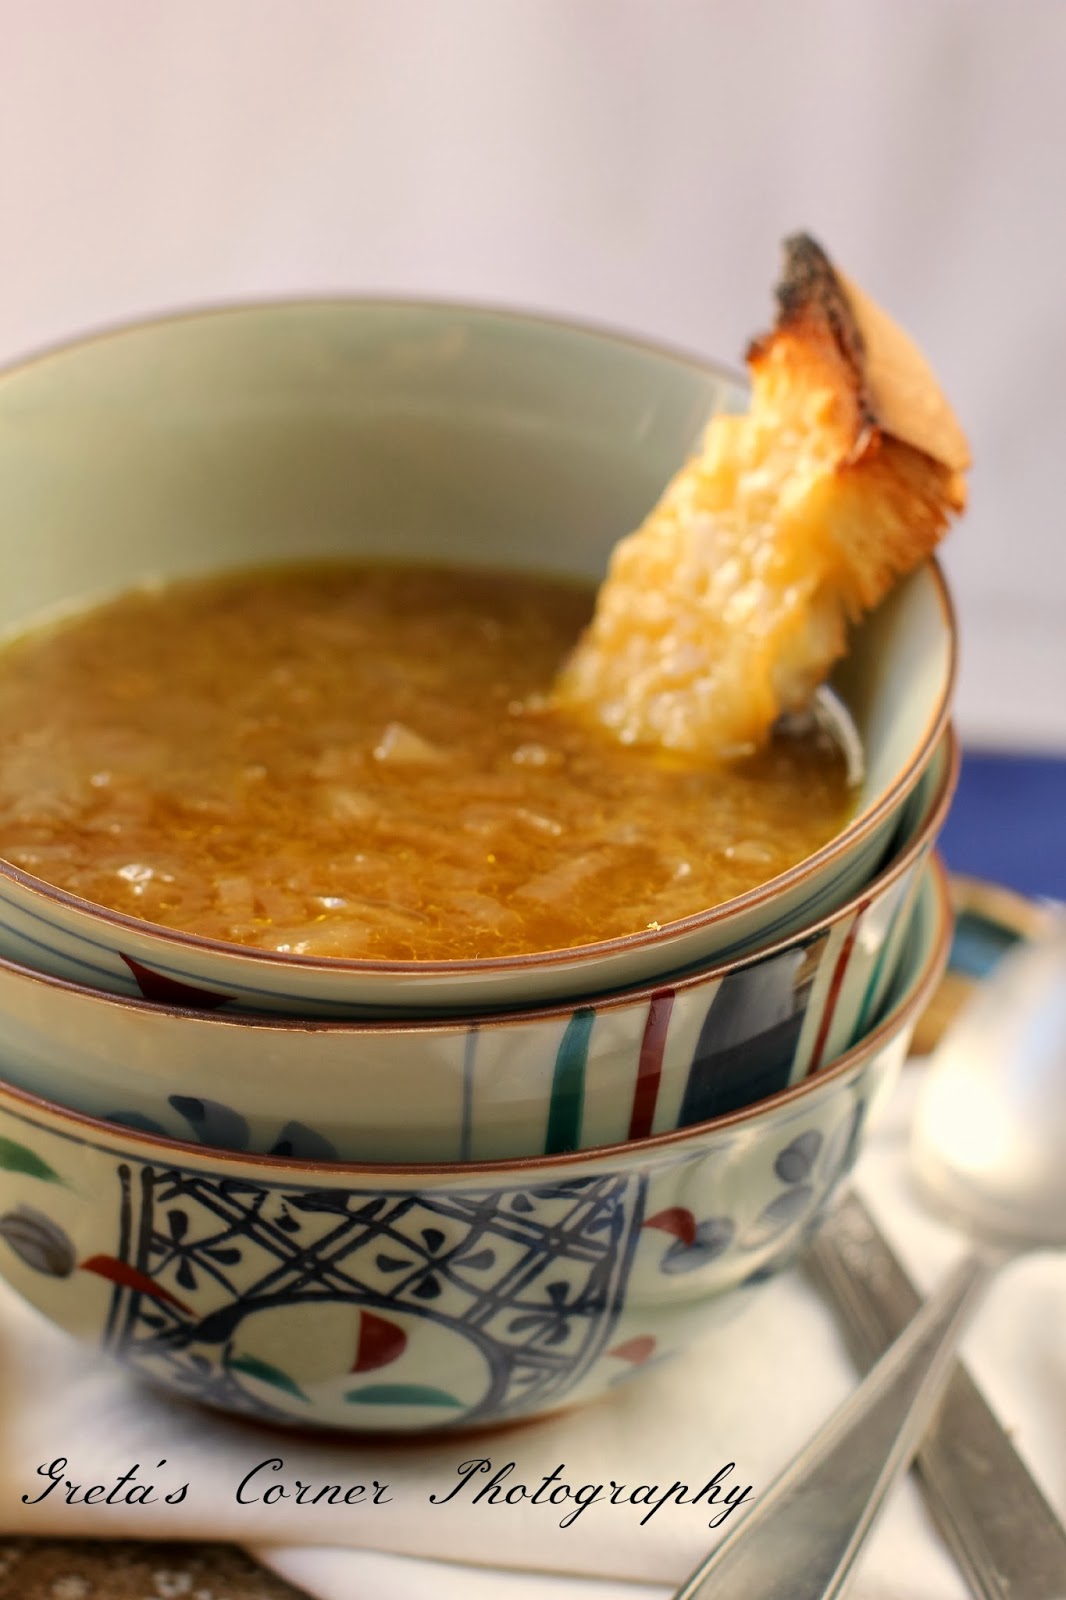 Migliori zuppe per depurare l'intestino